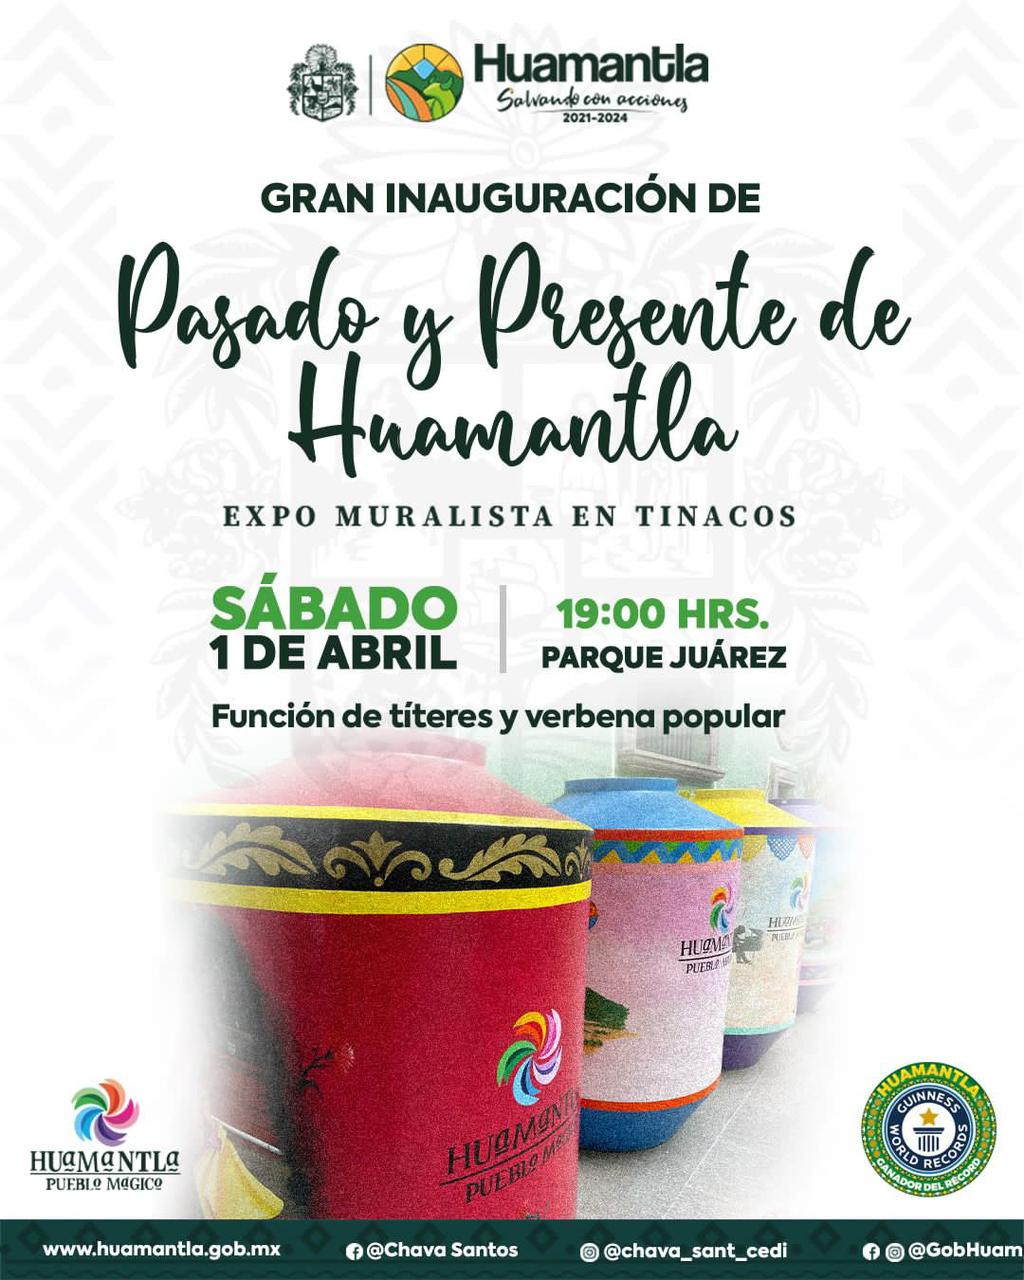 Invitan a la Expo Muralista de Tinacos “Pasado y Presente de Huamantla”